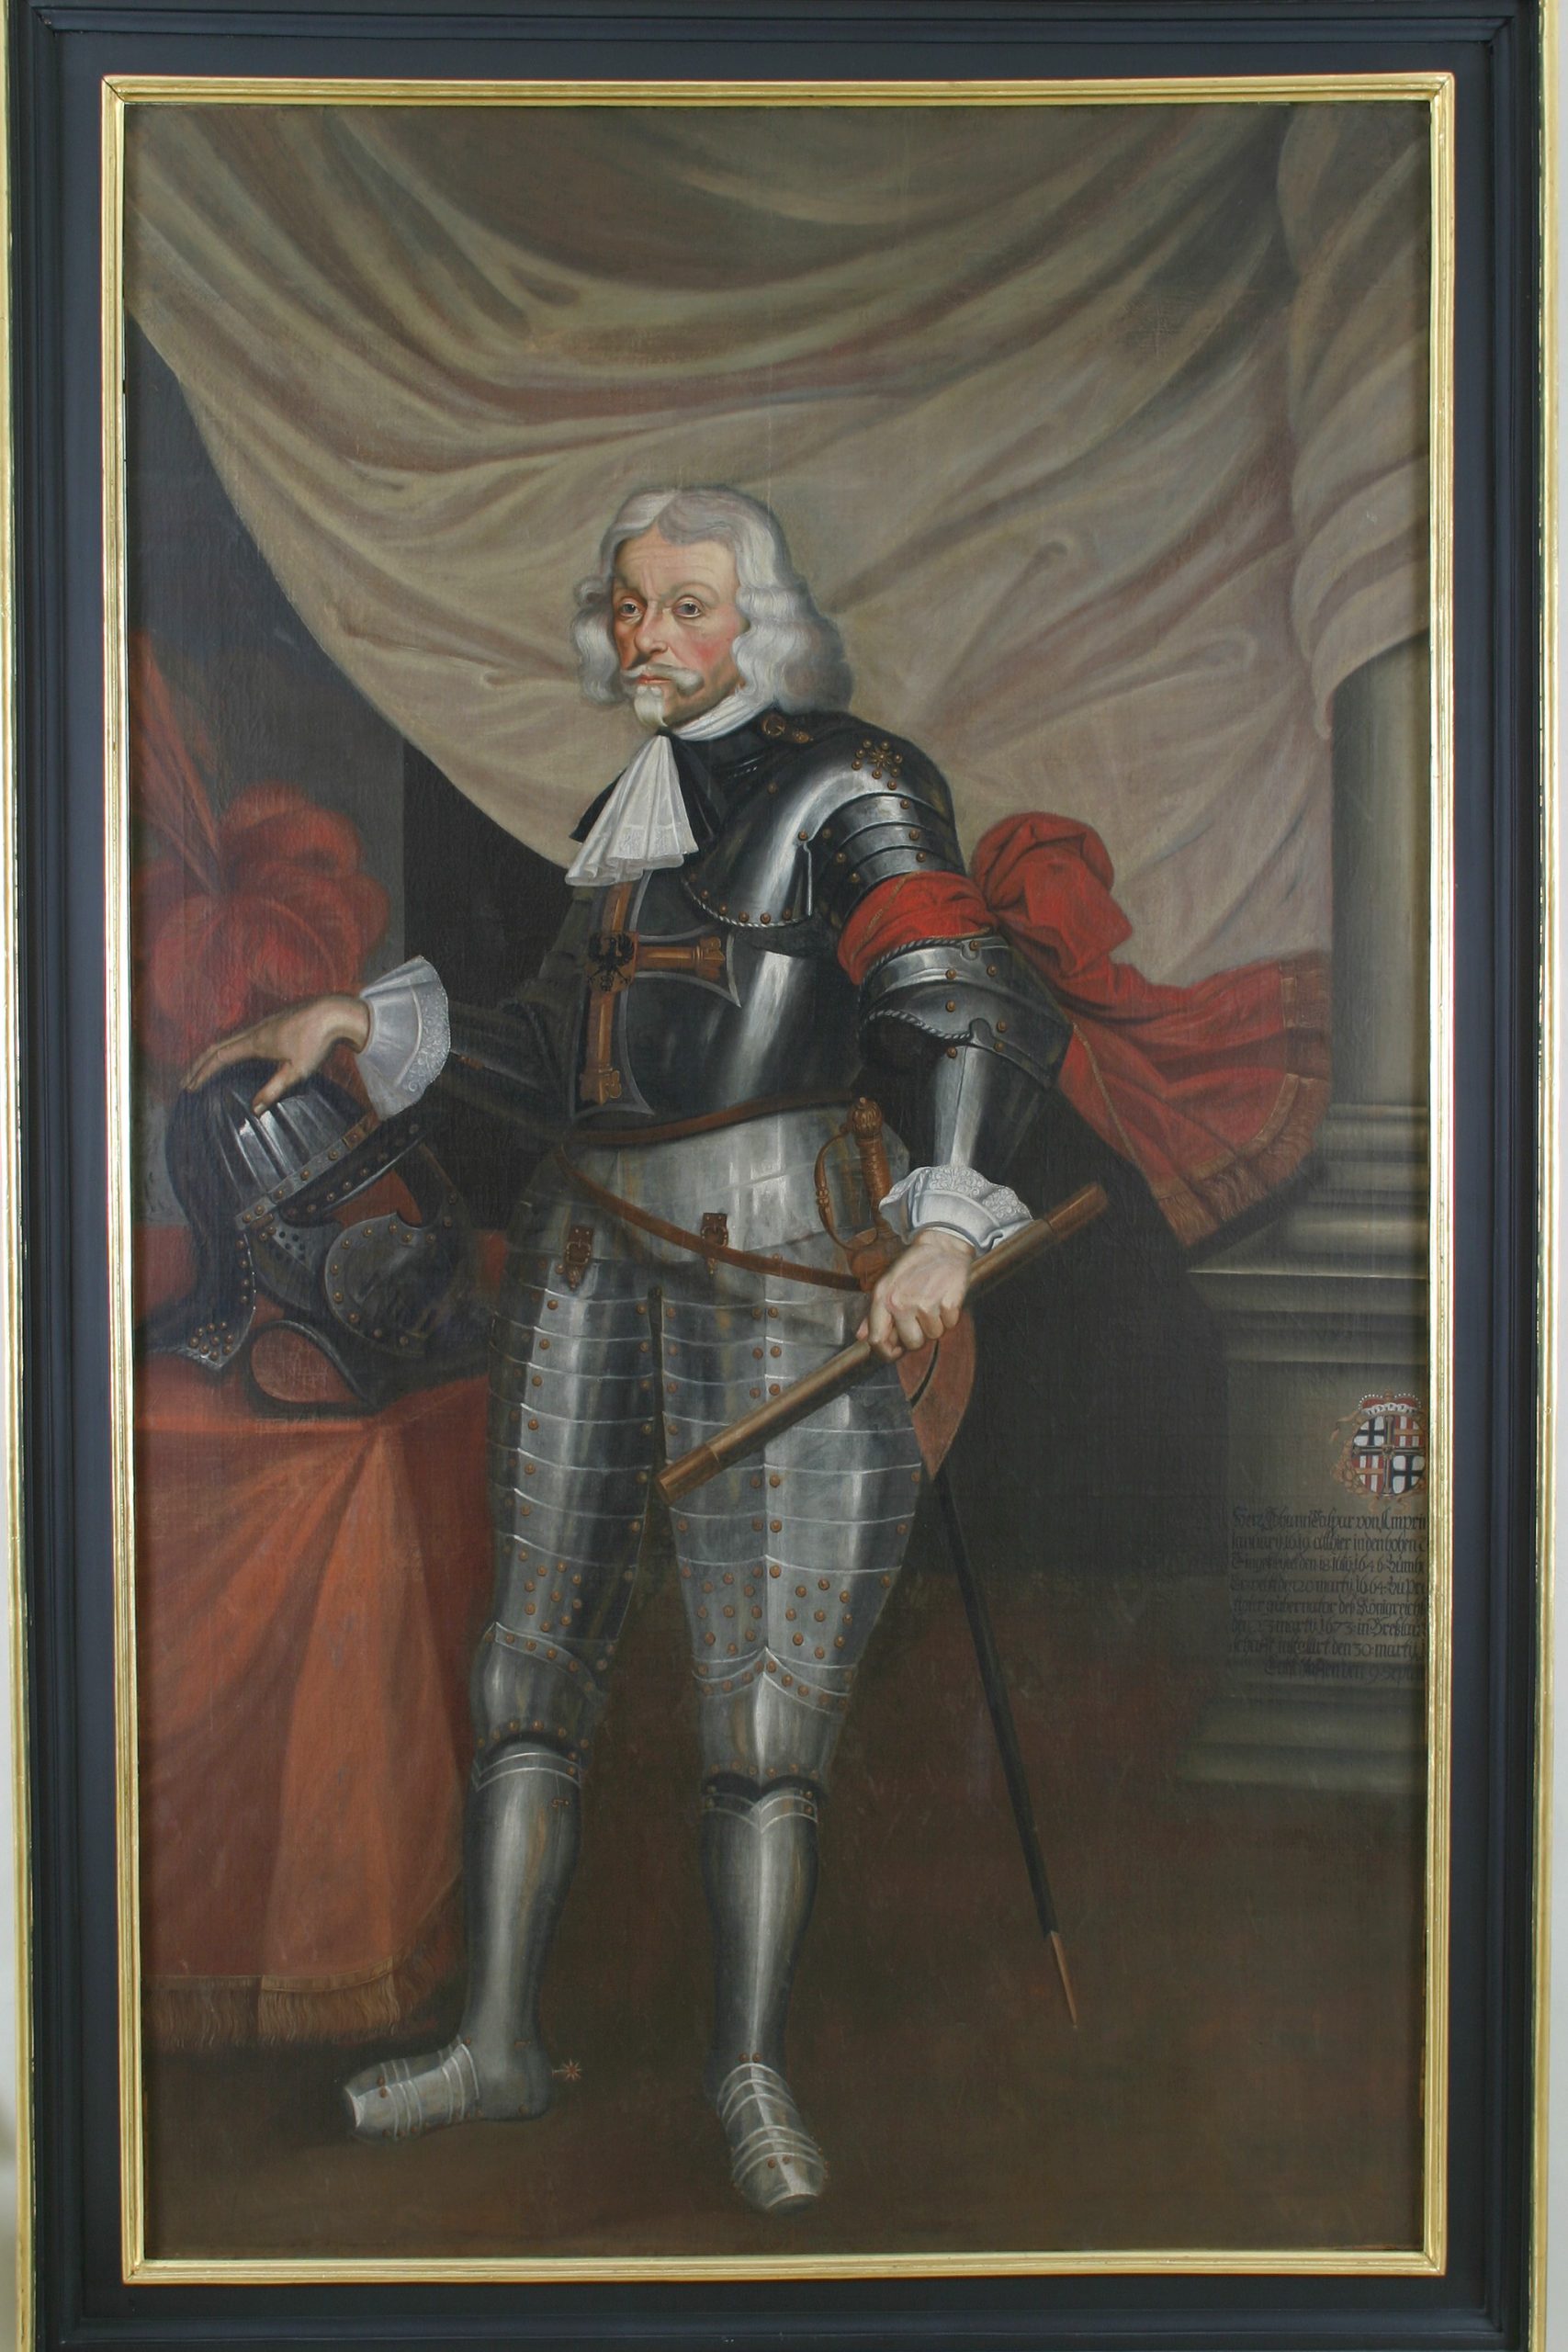 Das Bild zeigt ein Porträt des Hochmeisters Johann Caspar von Ampringen. Er trägt eine Ritterrüstung und hat ein rotes Tuch um den linken Arm gebunden. Neben ihm liegt ein Ritterhelm, auf den er seine rechte Hand stützt.